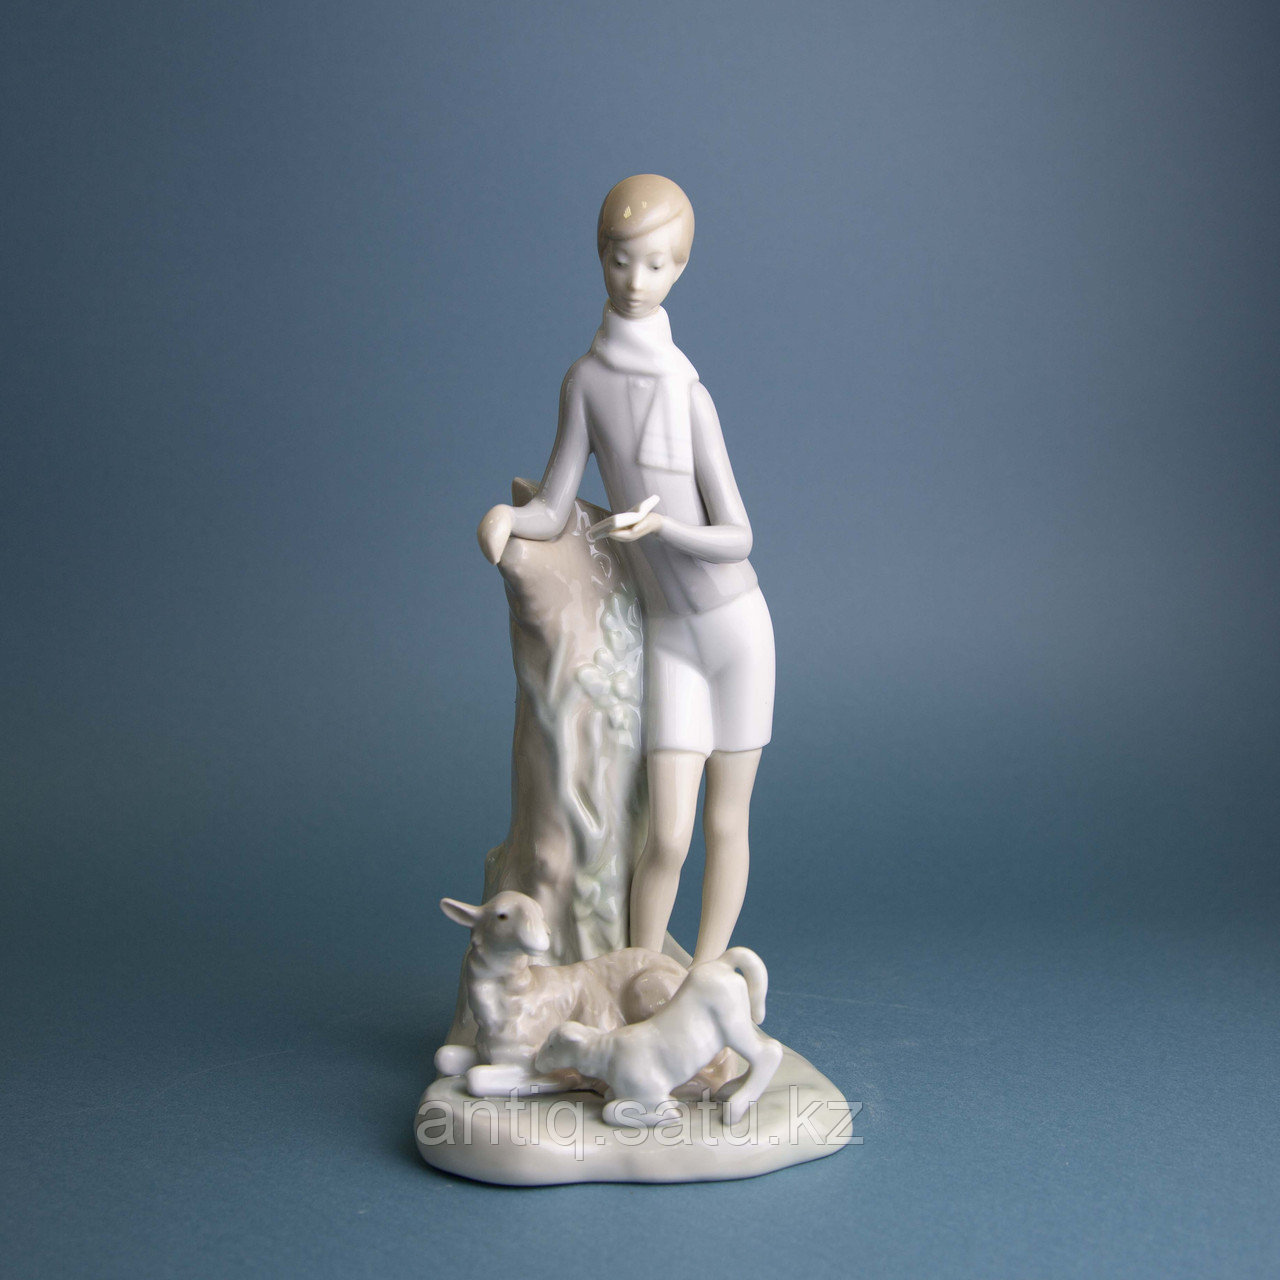 Юный поэт Фарфоровая мануфактура Lladro Испания. II половина​ XX века Фарфор, скульптурная лепка